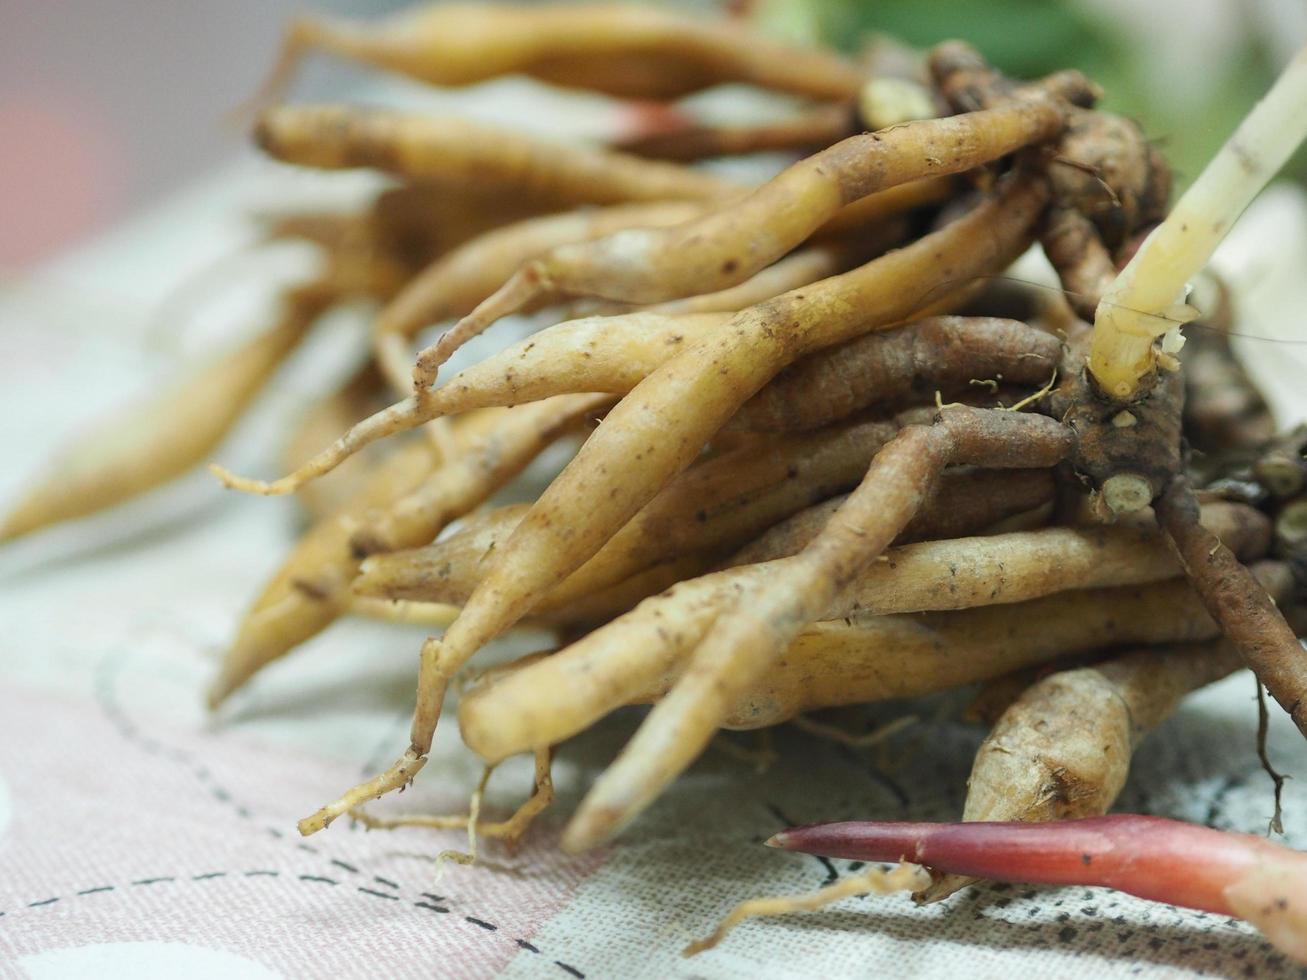 krachai, boesenbergia rotunda fingerroot, kleiner galgant oder chinesischer ingwer, ist ein medizinisches und kulinarisches kraut aus china und südostasien foto